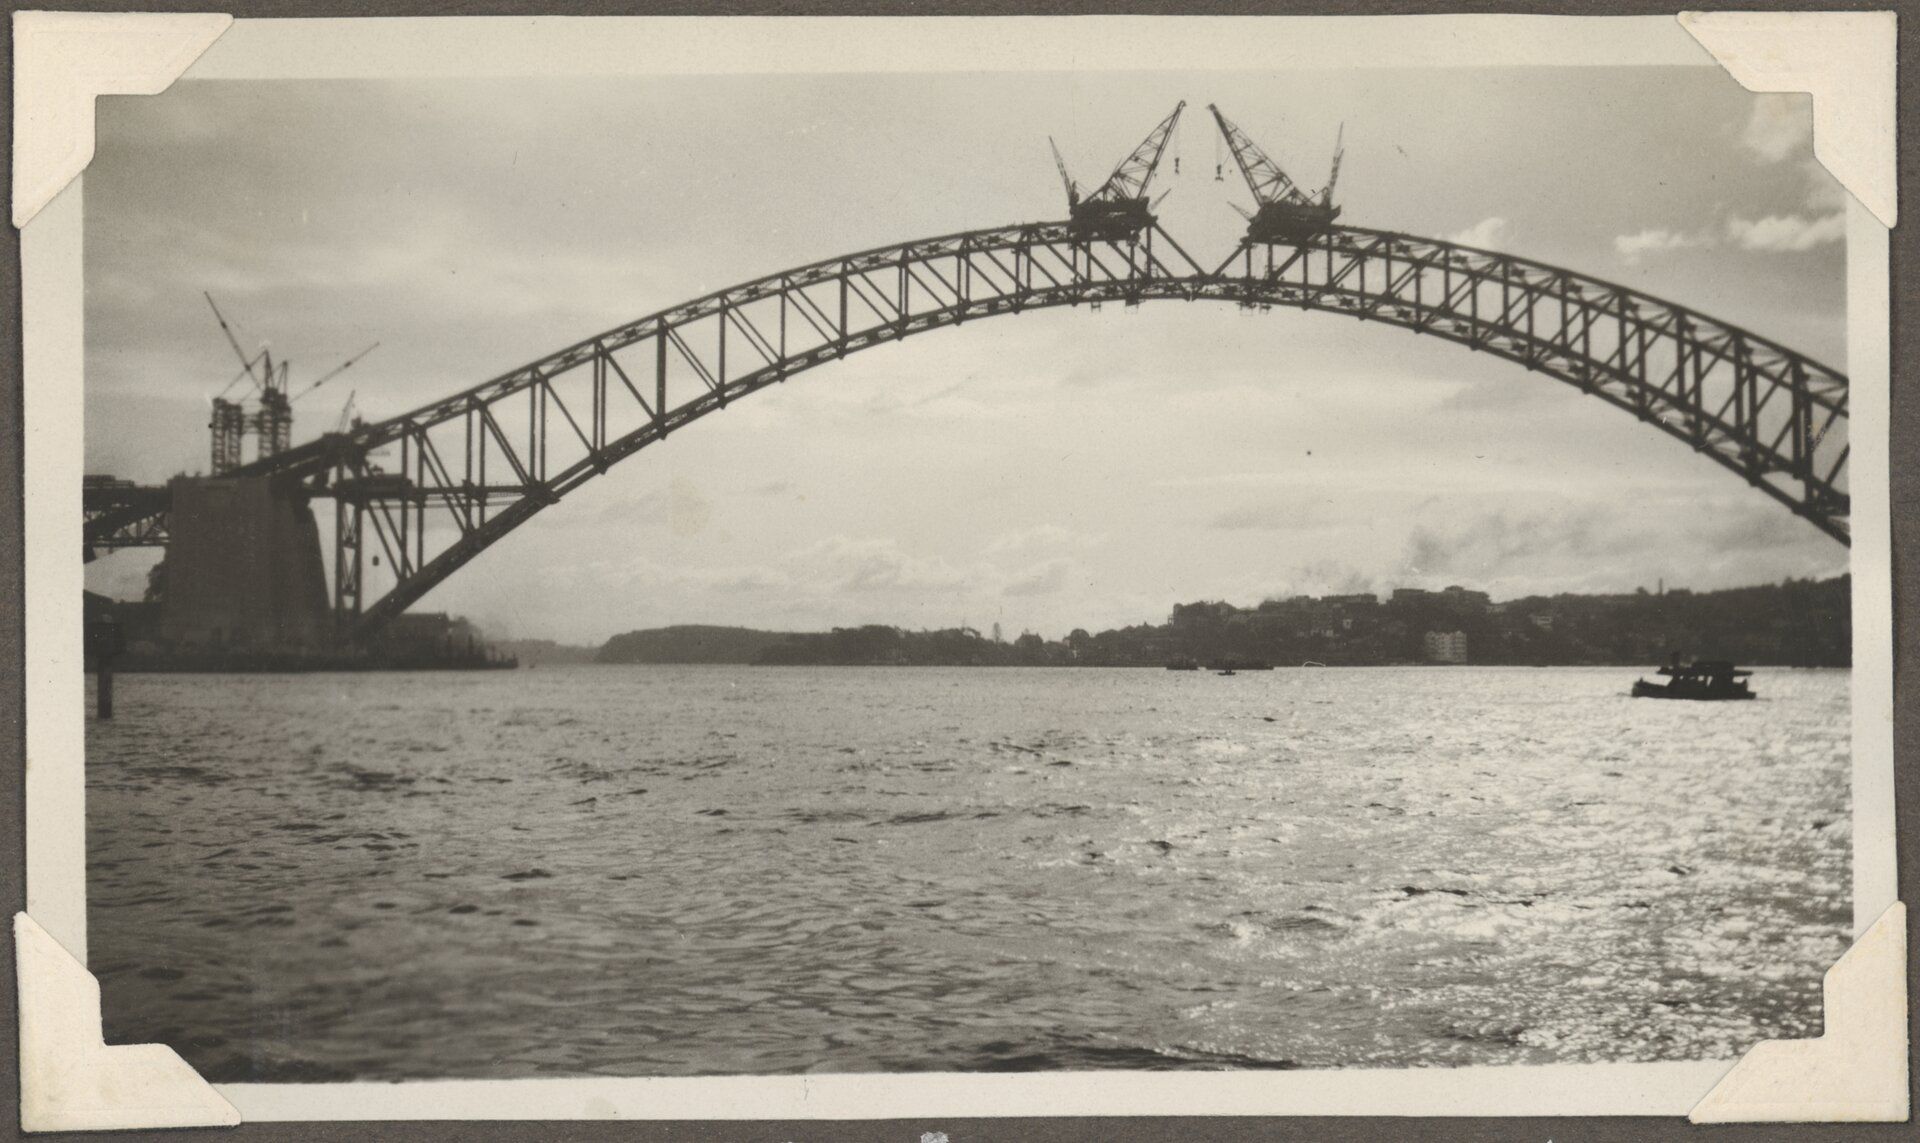 The Sydney Harbour Bridge under contrition